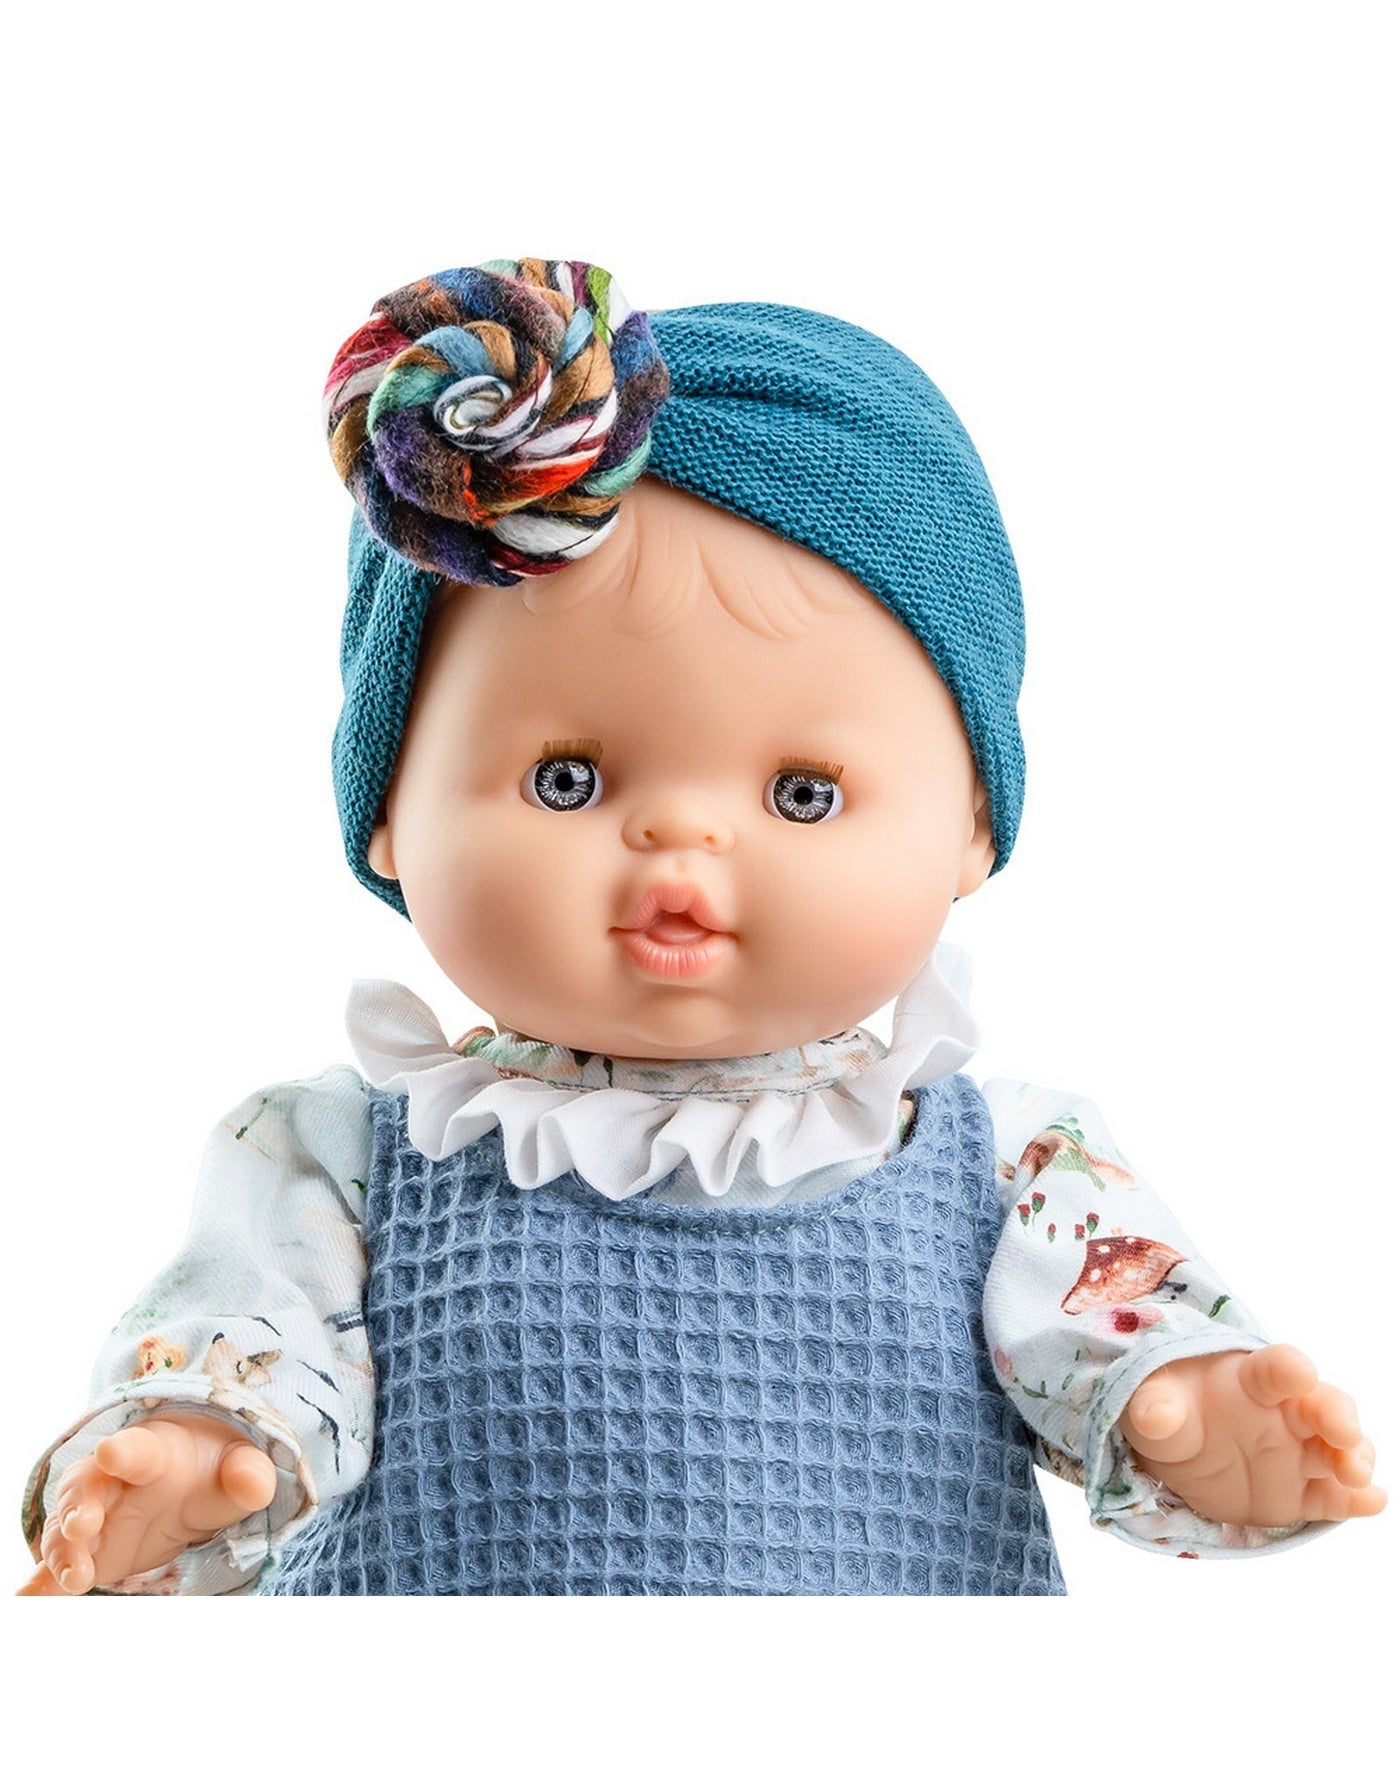 Vêtement pour poupée Gordis - Romper bleu avec bonnet turban - Paola Reina